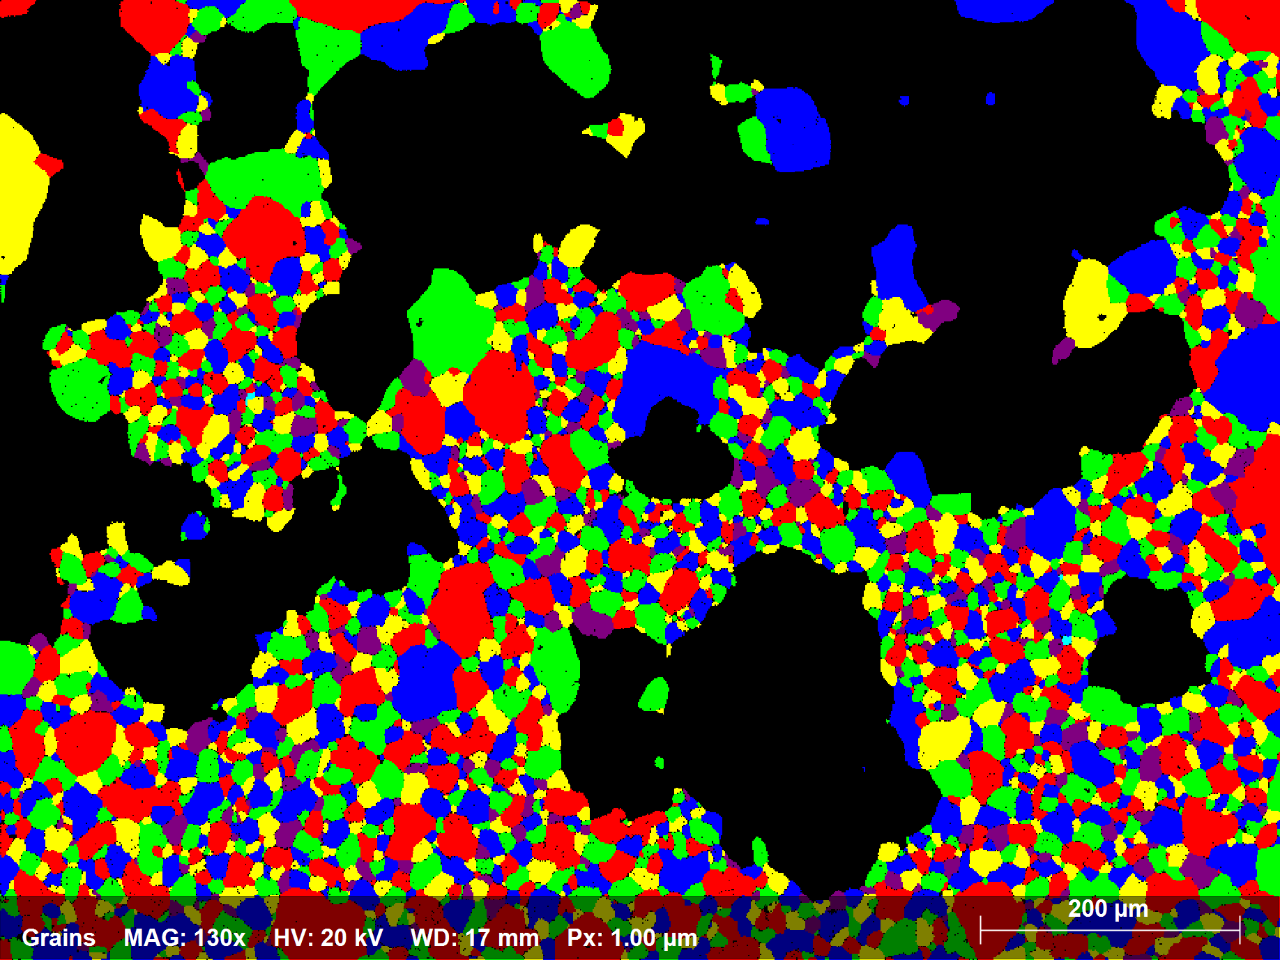 1.4: Subconjunto del mapa EBSD de aleación de Ni que muestra en colores aleatorios todos los granos con un diámetro equivalente inferior a 70 micras; hay 2250 granos que representan el 58% del área del mapa